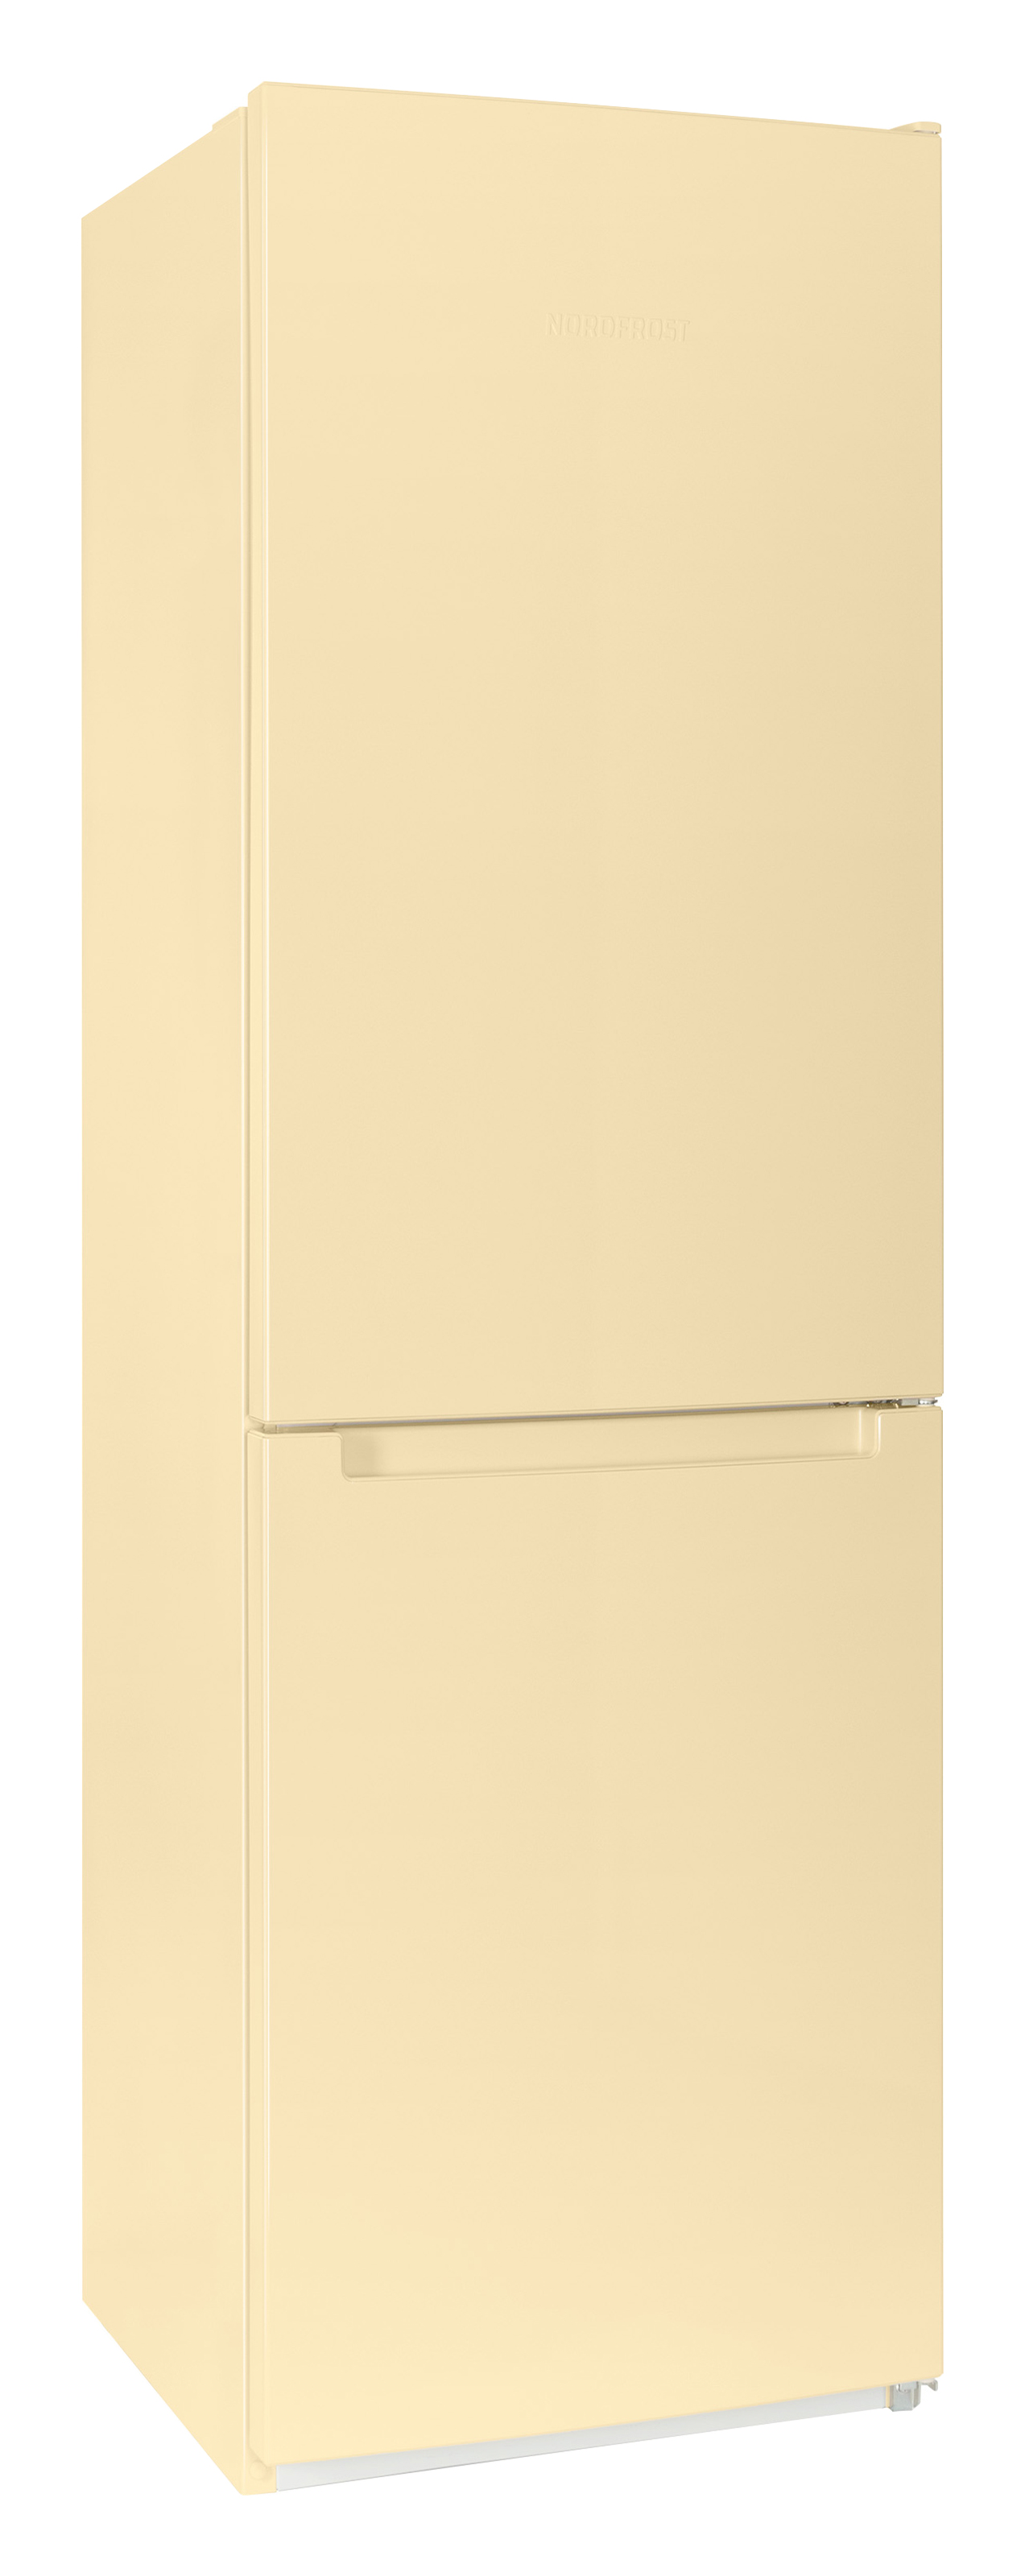 Холодильник бежевый no frost. Холодильник Bosch kgv36xk2ar, бежевый. Bosch kgv39xk22r. Холодильник Bosch kgv36xk2ar. Холодильники Nord NRB 154-732.